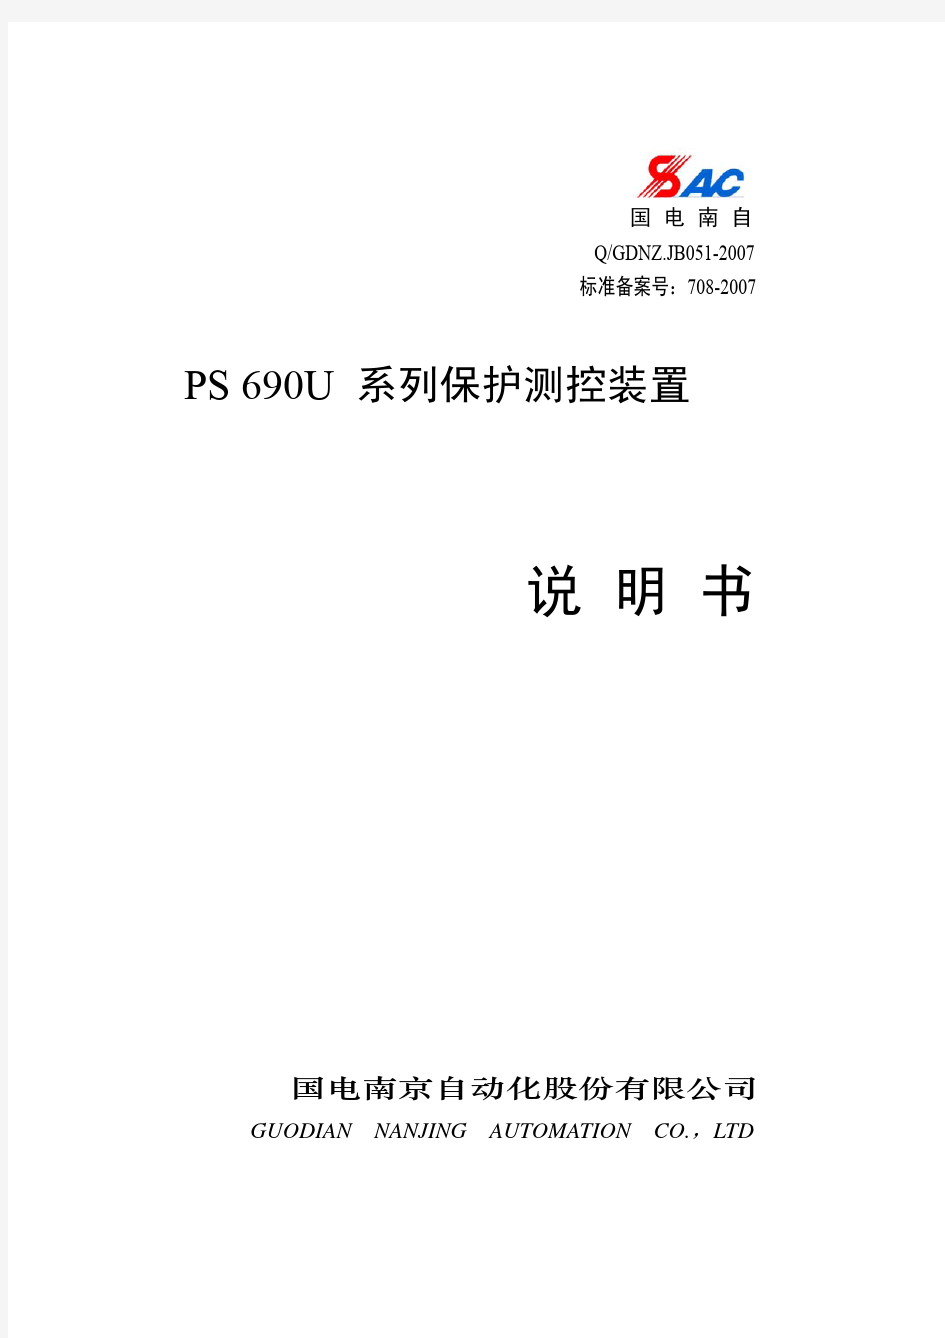 PS690U系列保护测控装置技术使用说明书V1.3